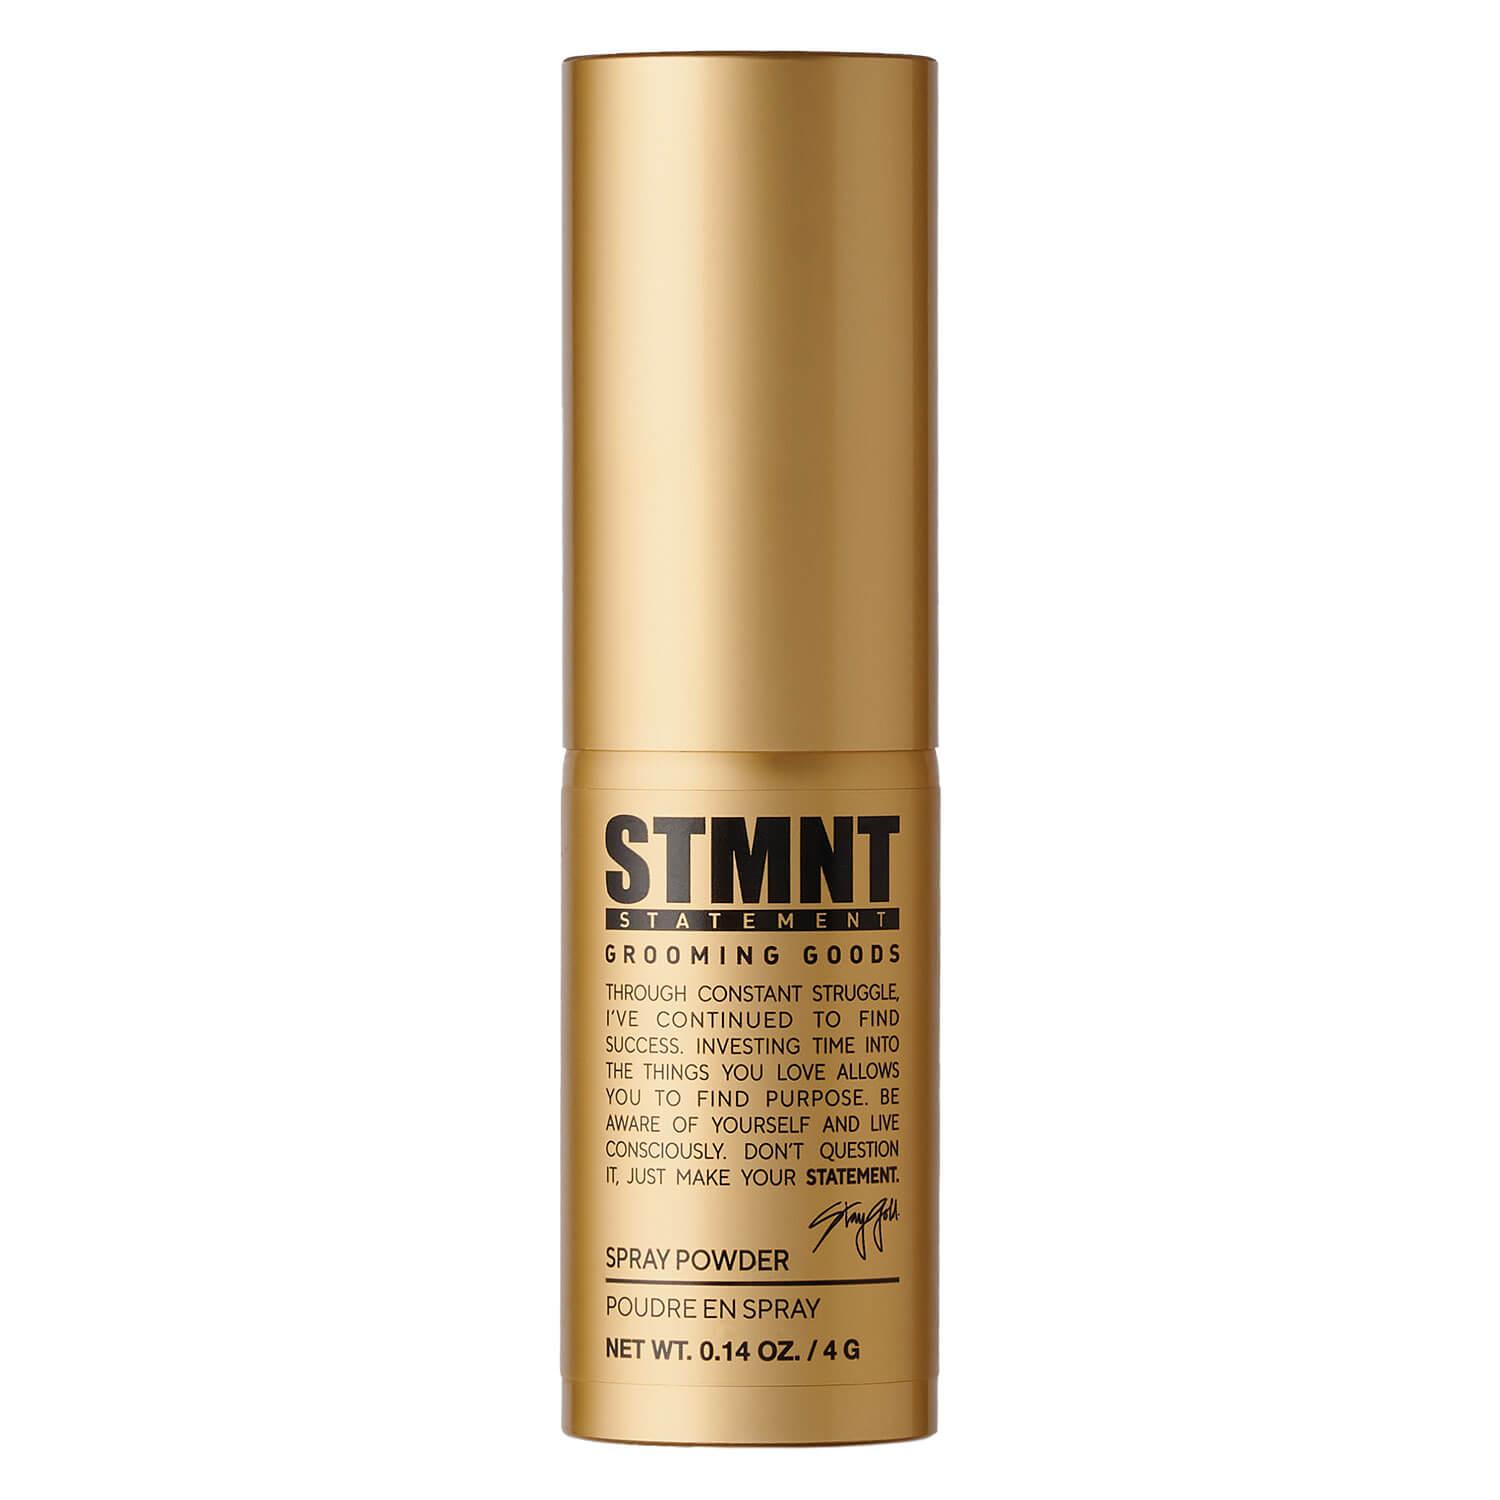 STMNT - Spray Powder